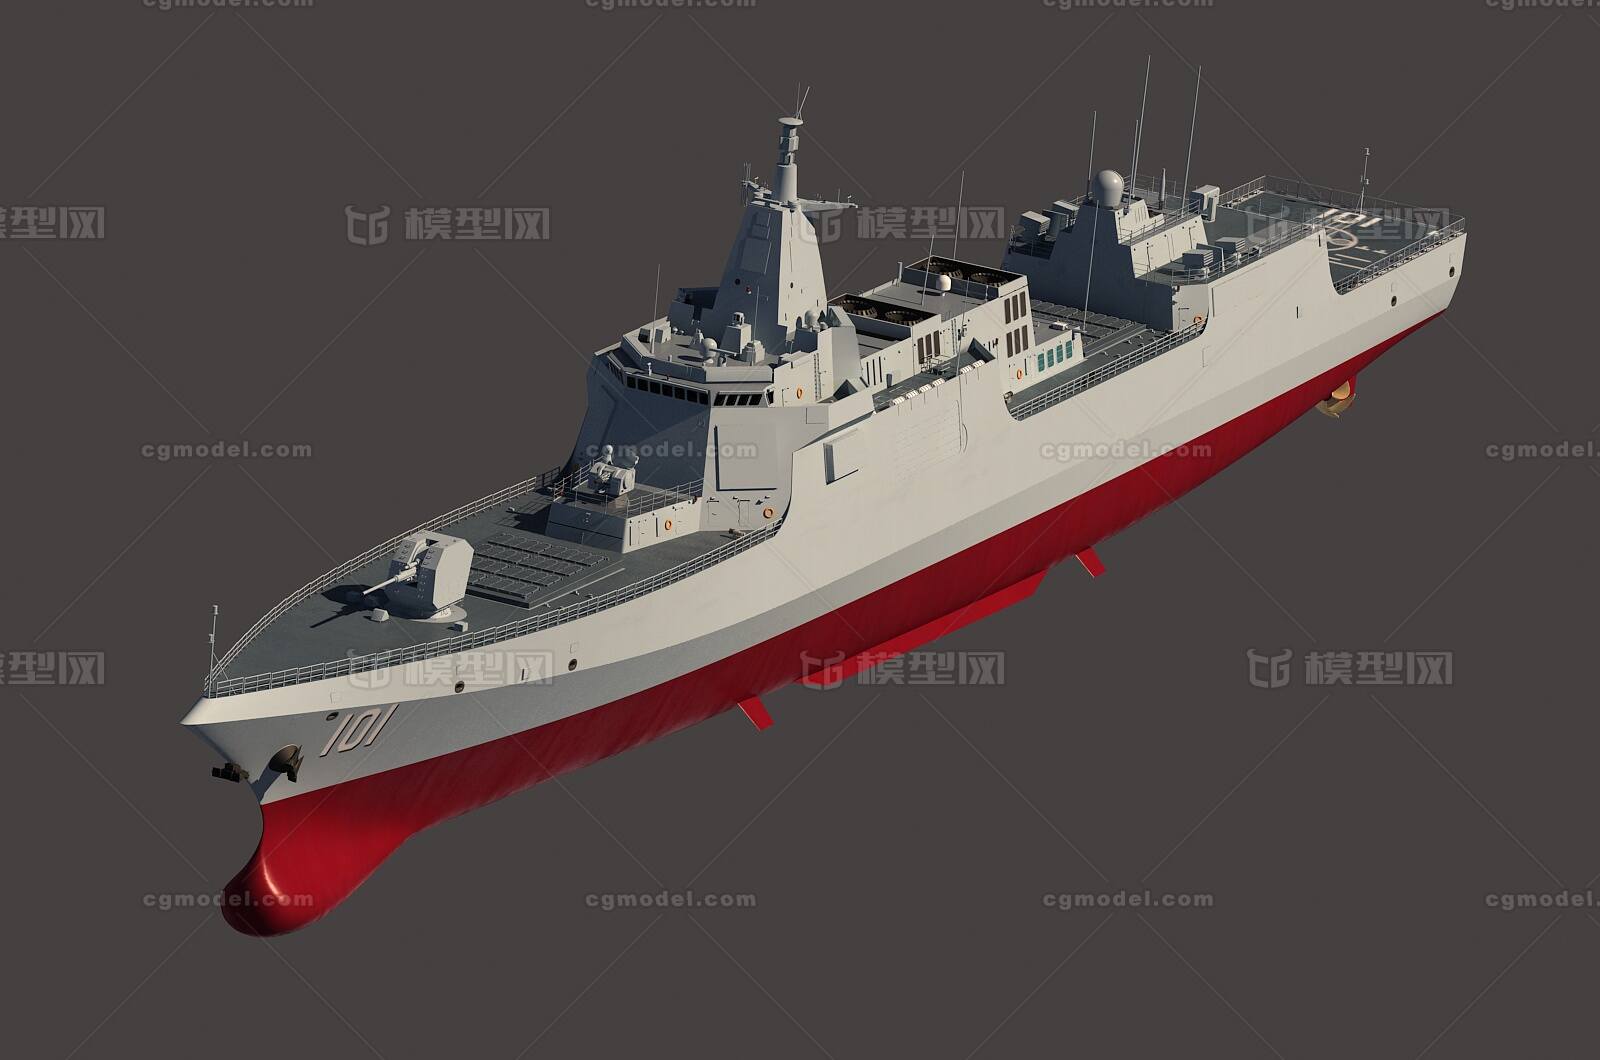 中国海军055型导弹驱逐舰_骇浪作品_船艇军舰_cg模型网